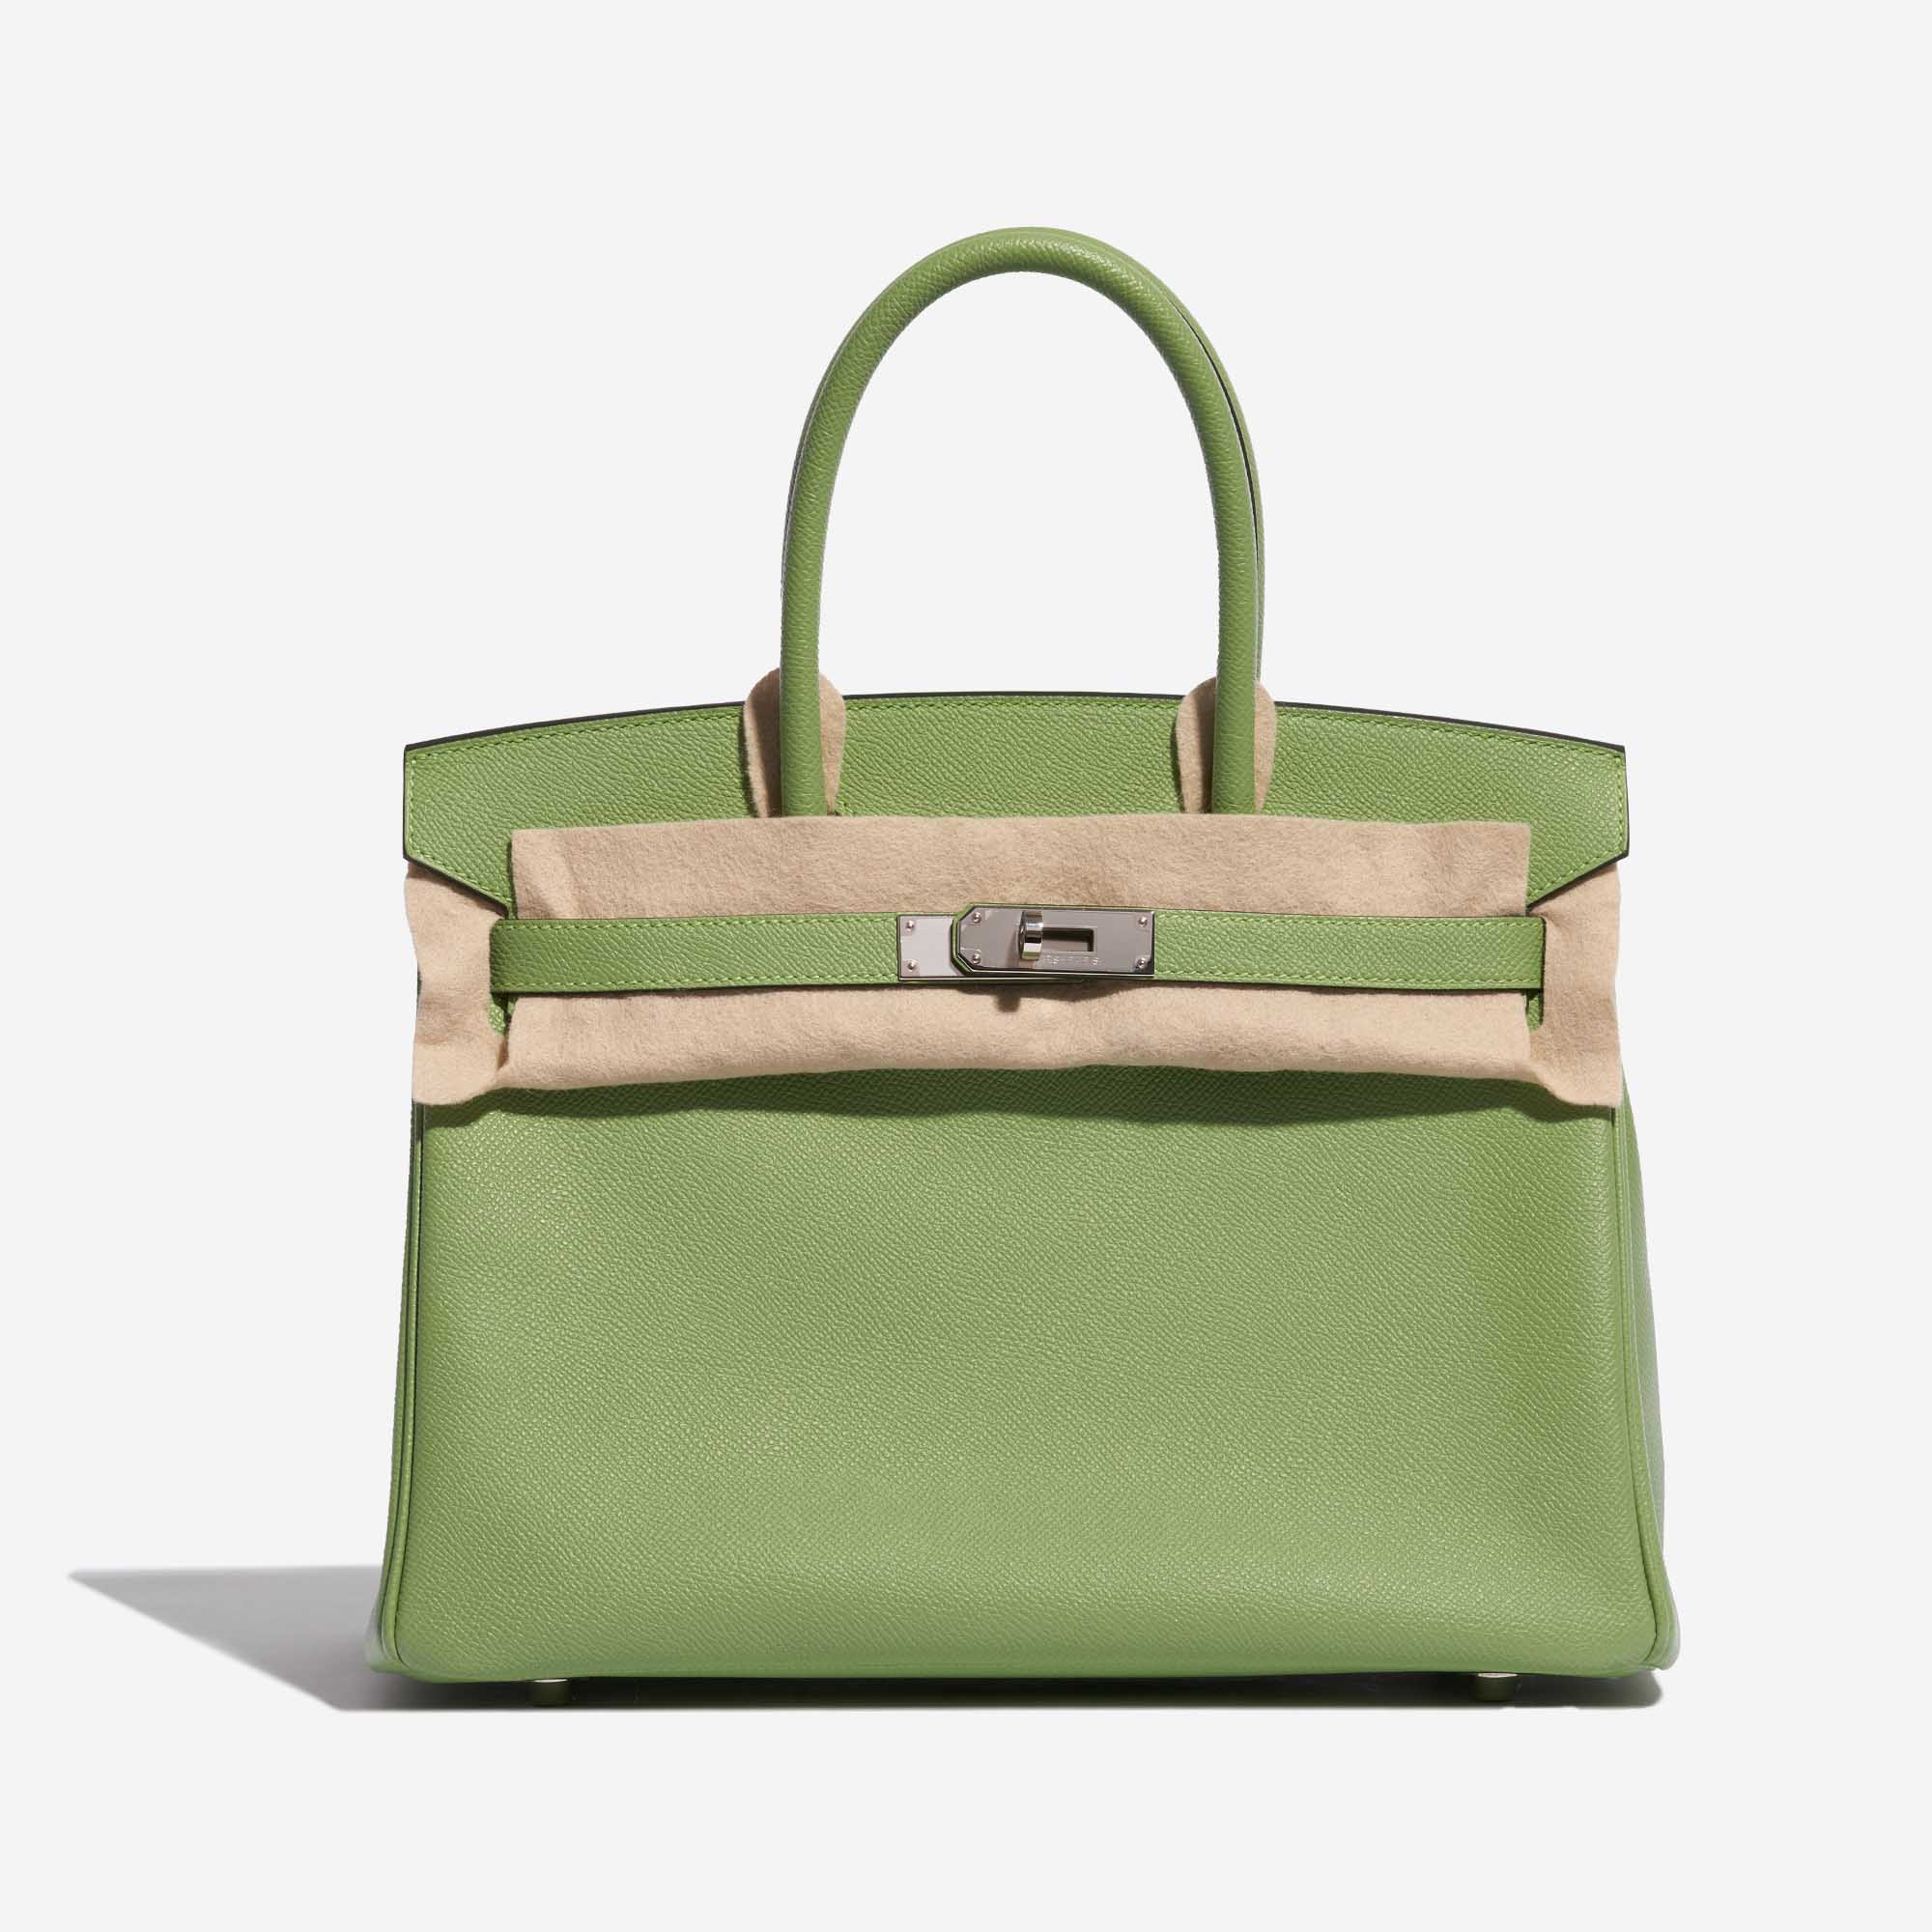 Pre-owned Hermès Tasche Birkin 30 Epsom Vert Criquet Grün Front Velt | Verkaufen Sie Ihre Designer-Tasche auf Saclab.com